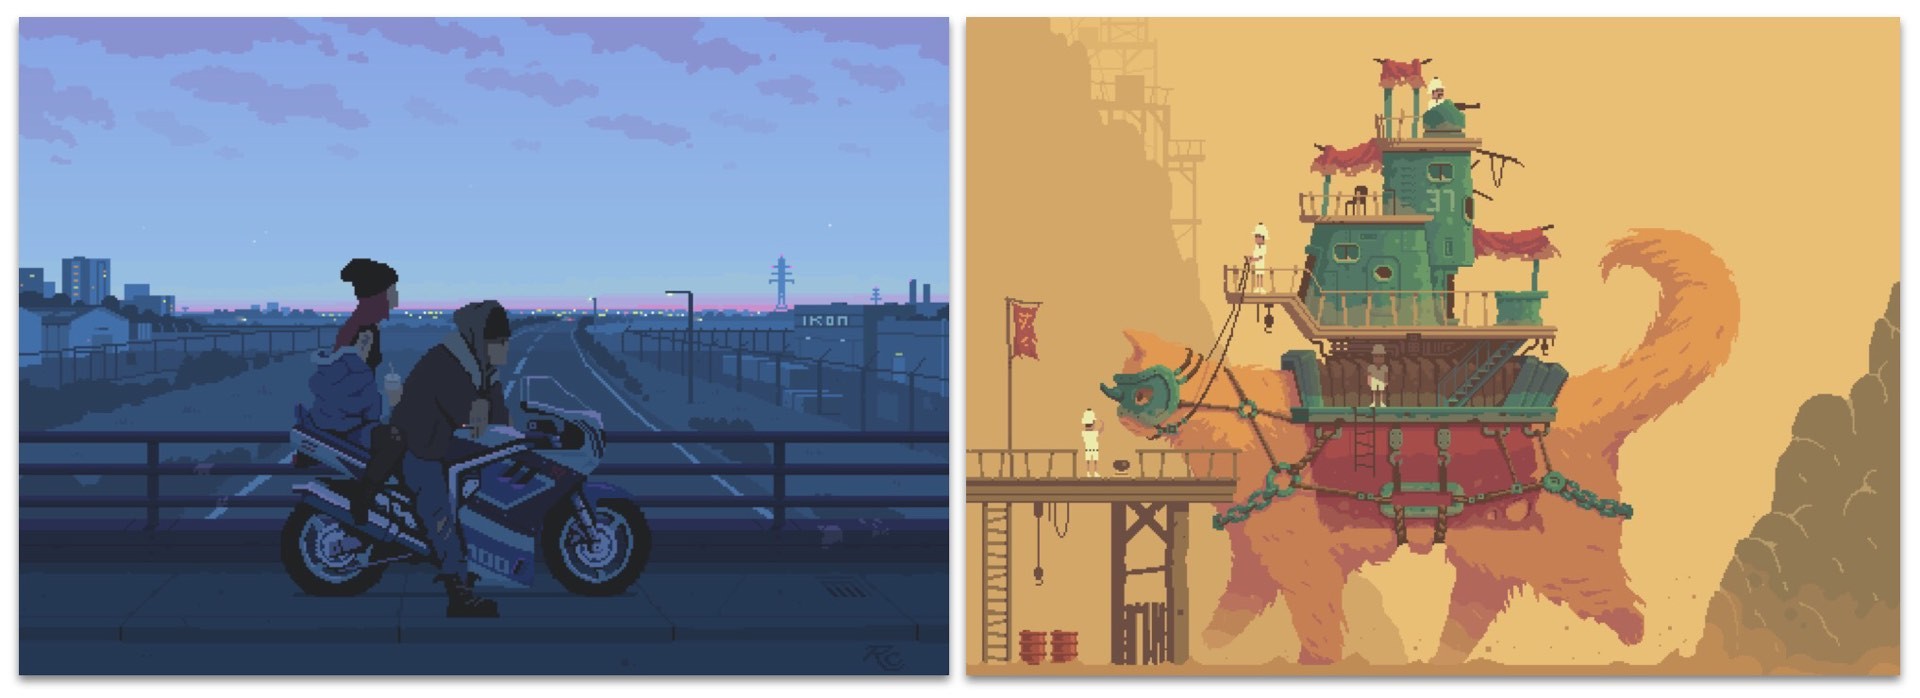 Artwork: Romain CourtoisDirect links: "Lovers at Dusk" (left) and "Monster Cat Machine" (right)